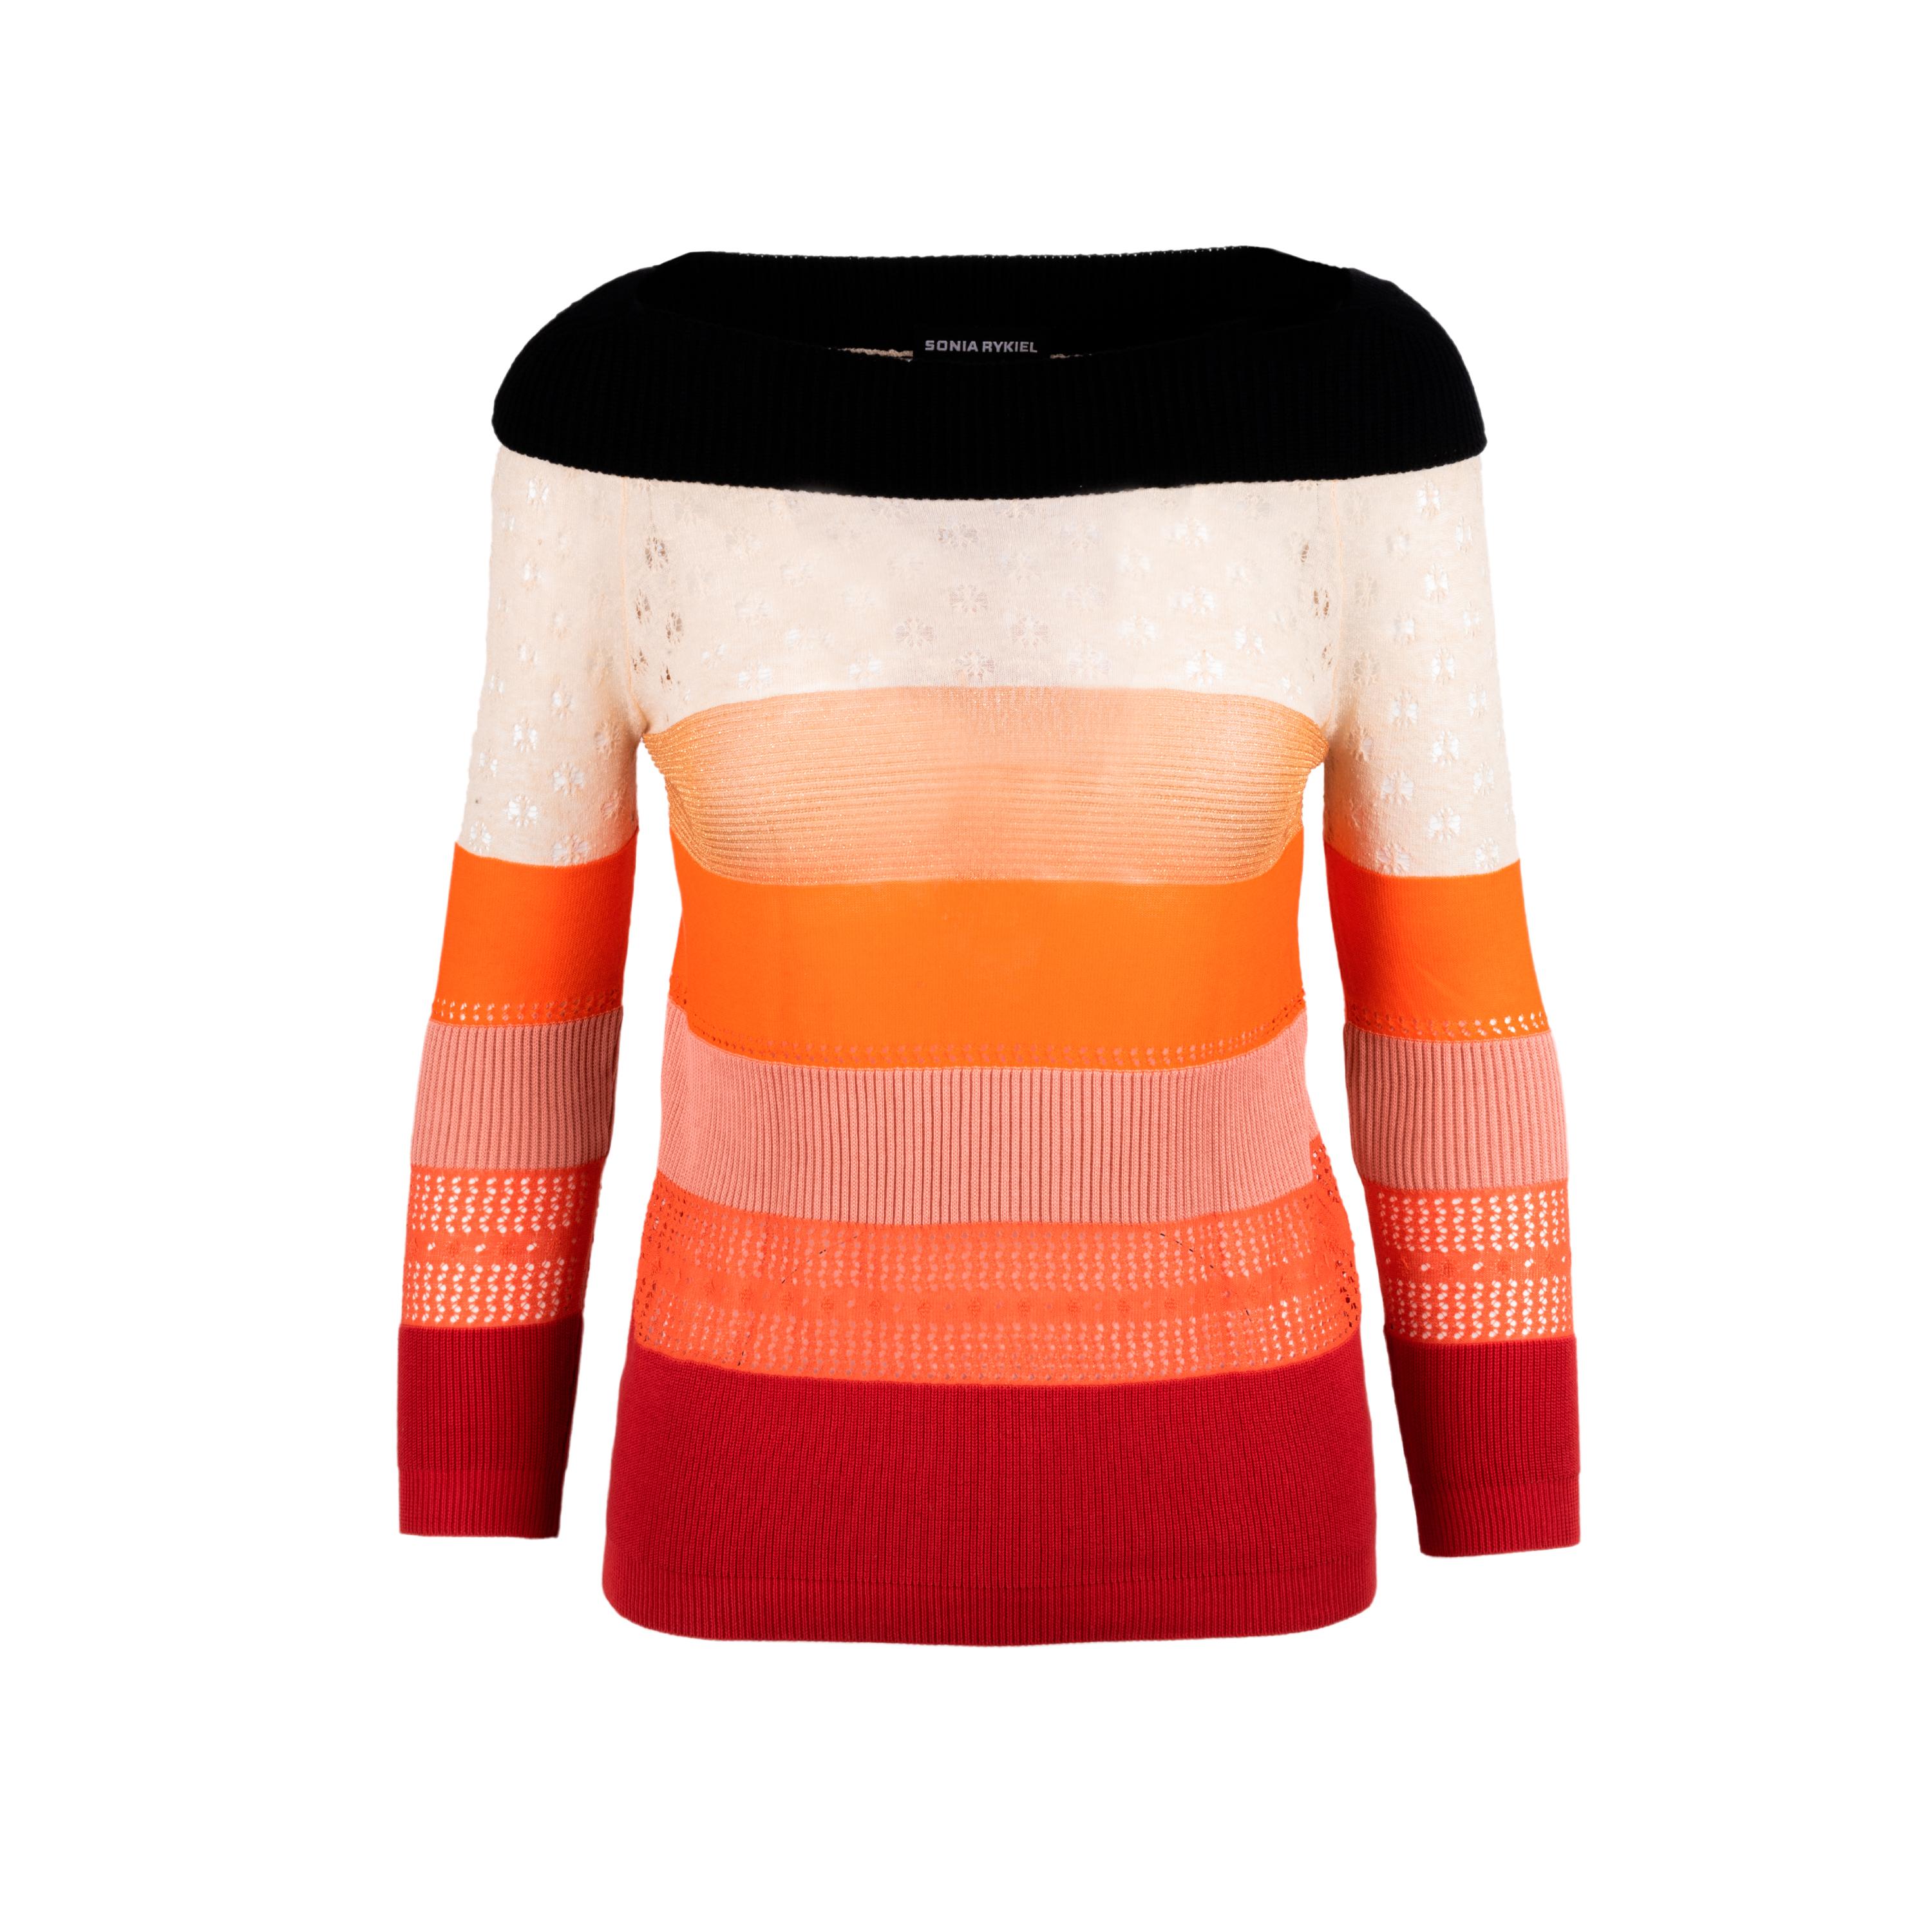 Sonia Rykiel Multicolour Sweater In Good Condition For Sale In Milano, IT